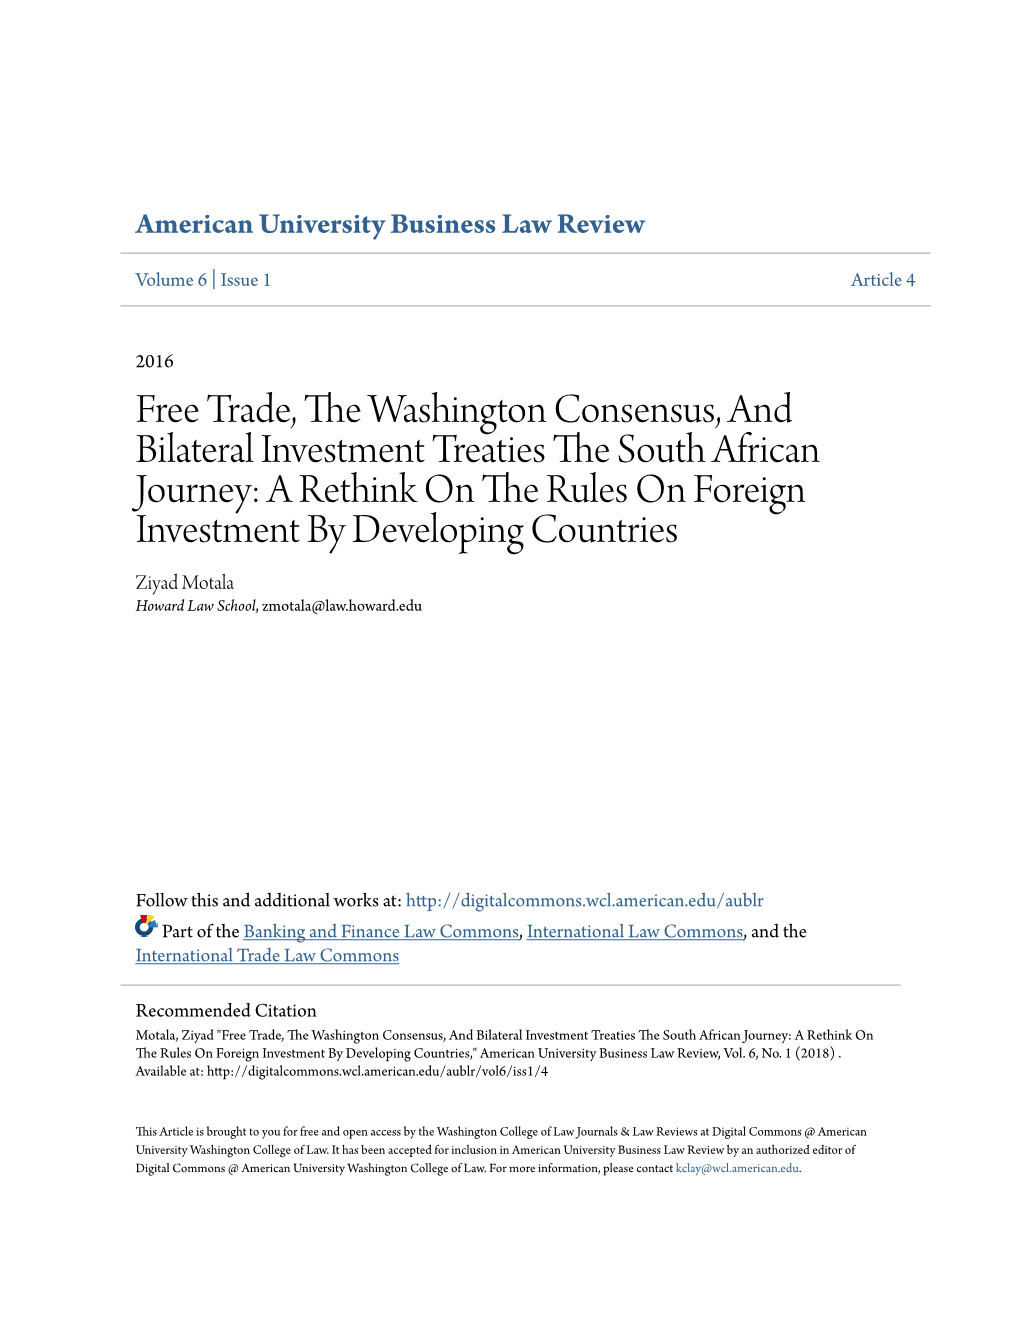 Free Trade, the Washington Consensus, and Bilateral